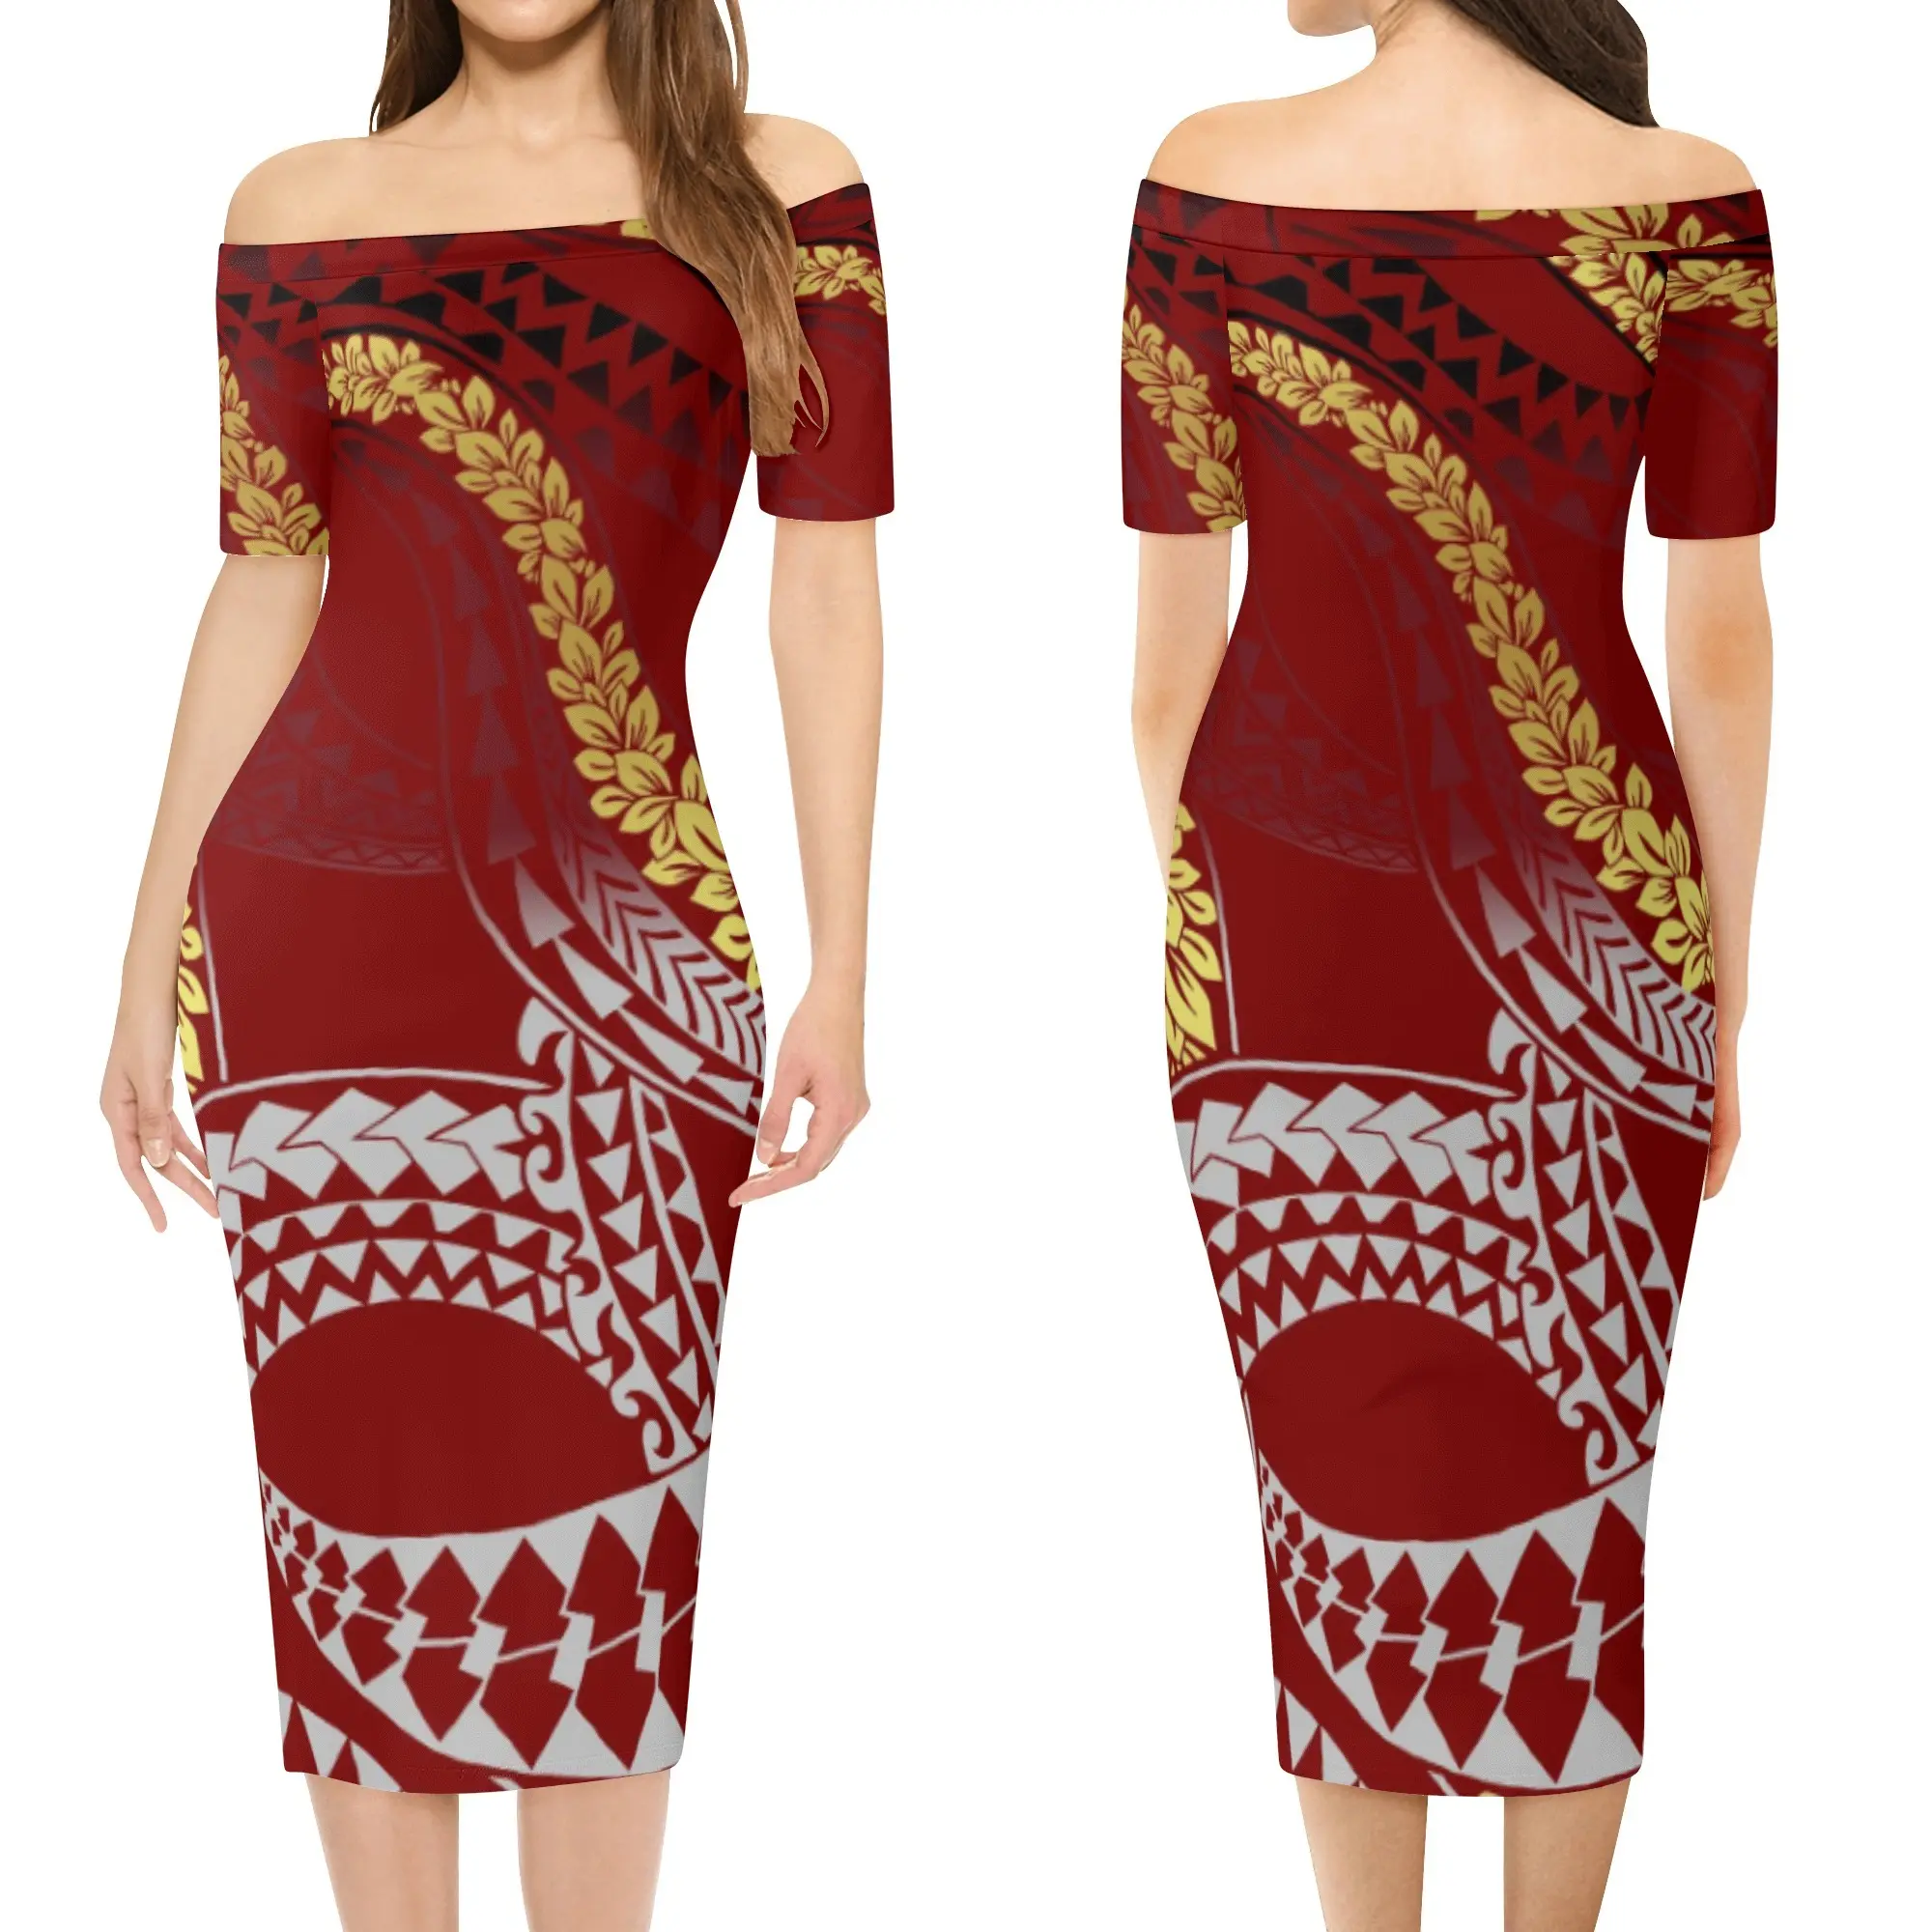 Vestido para mulheres, 6xl saia extragrande da moda moda de tatuagem maiores roupas femininas da polinésia vestido com envólucro oferta especial elegante